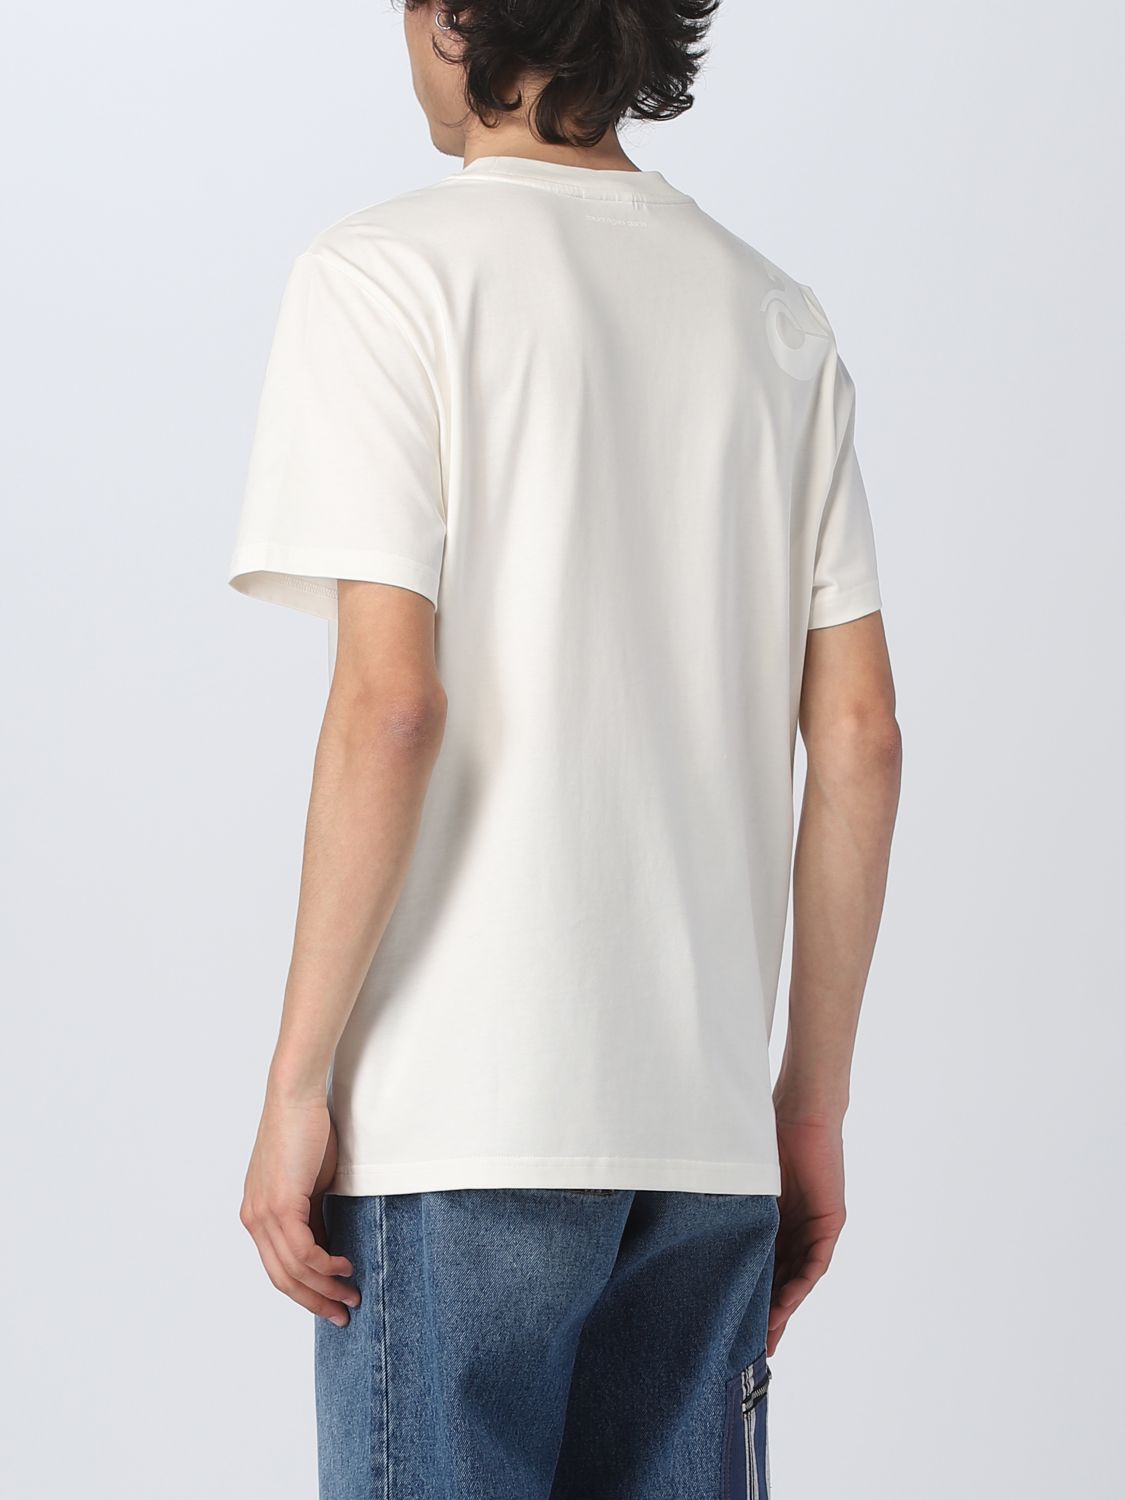 T-shirt Courrèges: T-shirt CourrÈges in cotone bianco 3